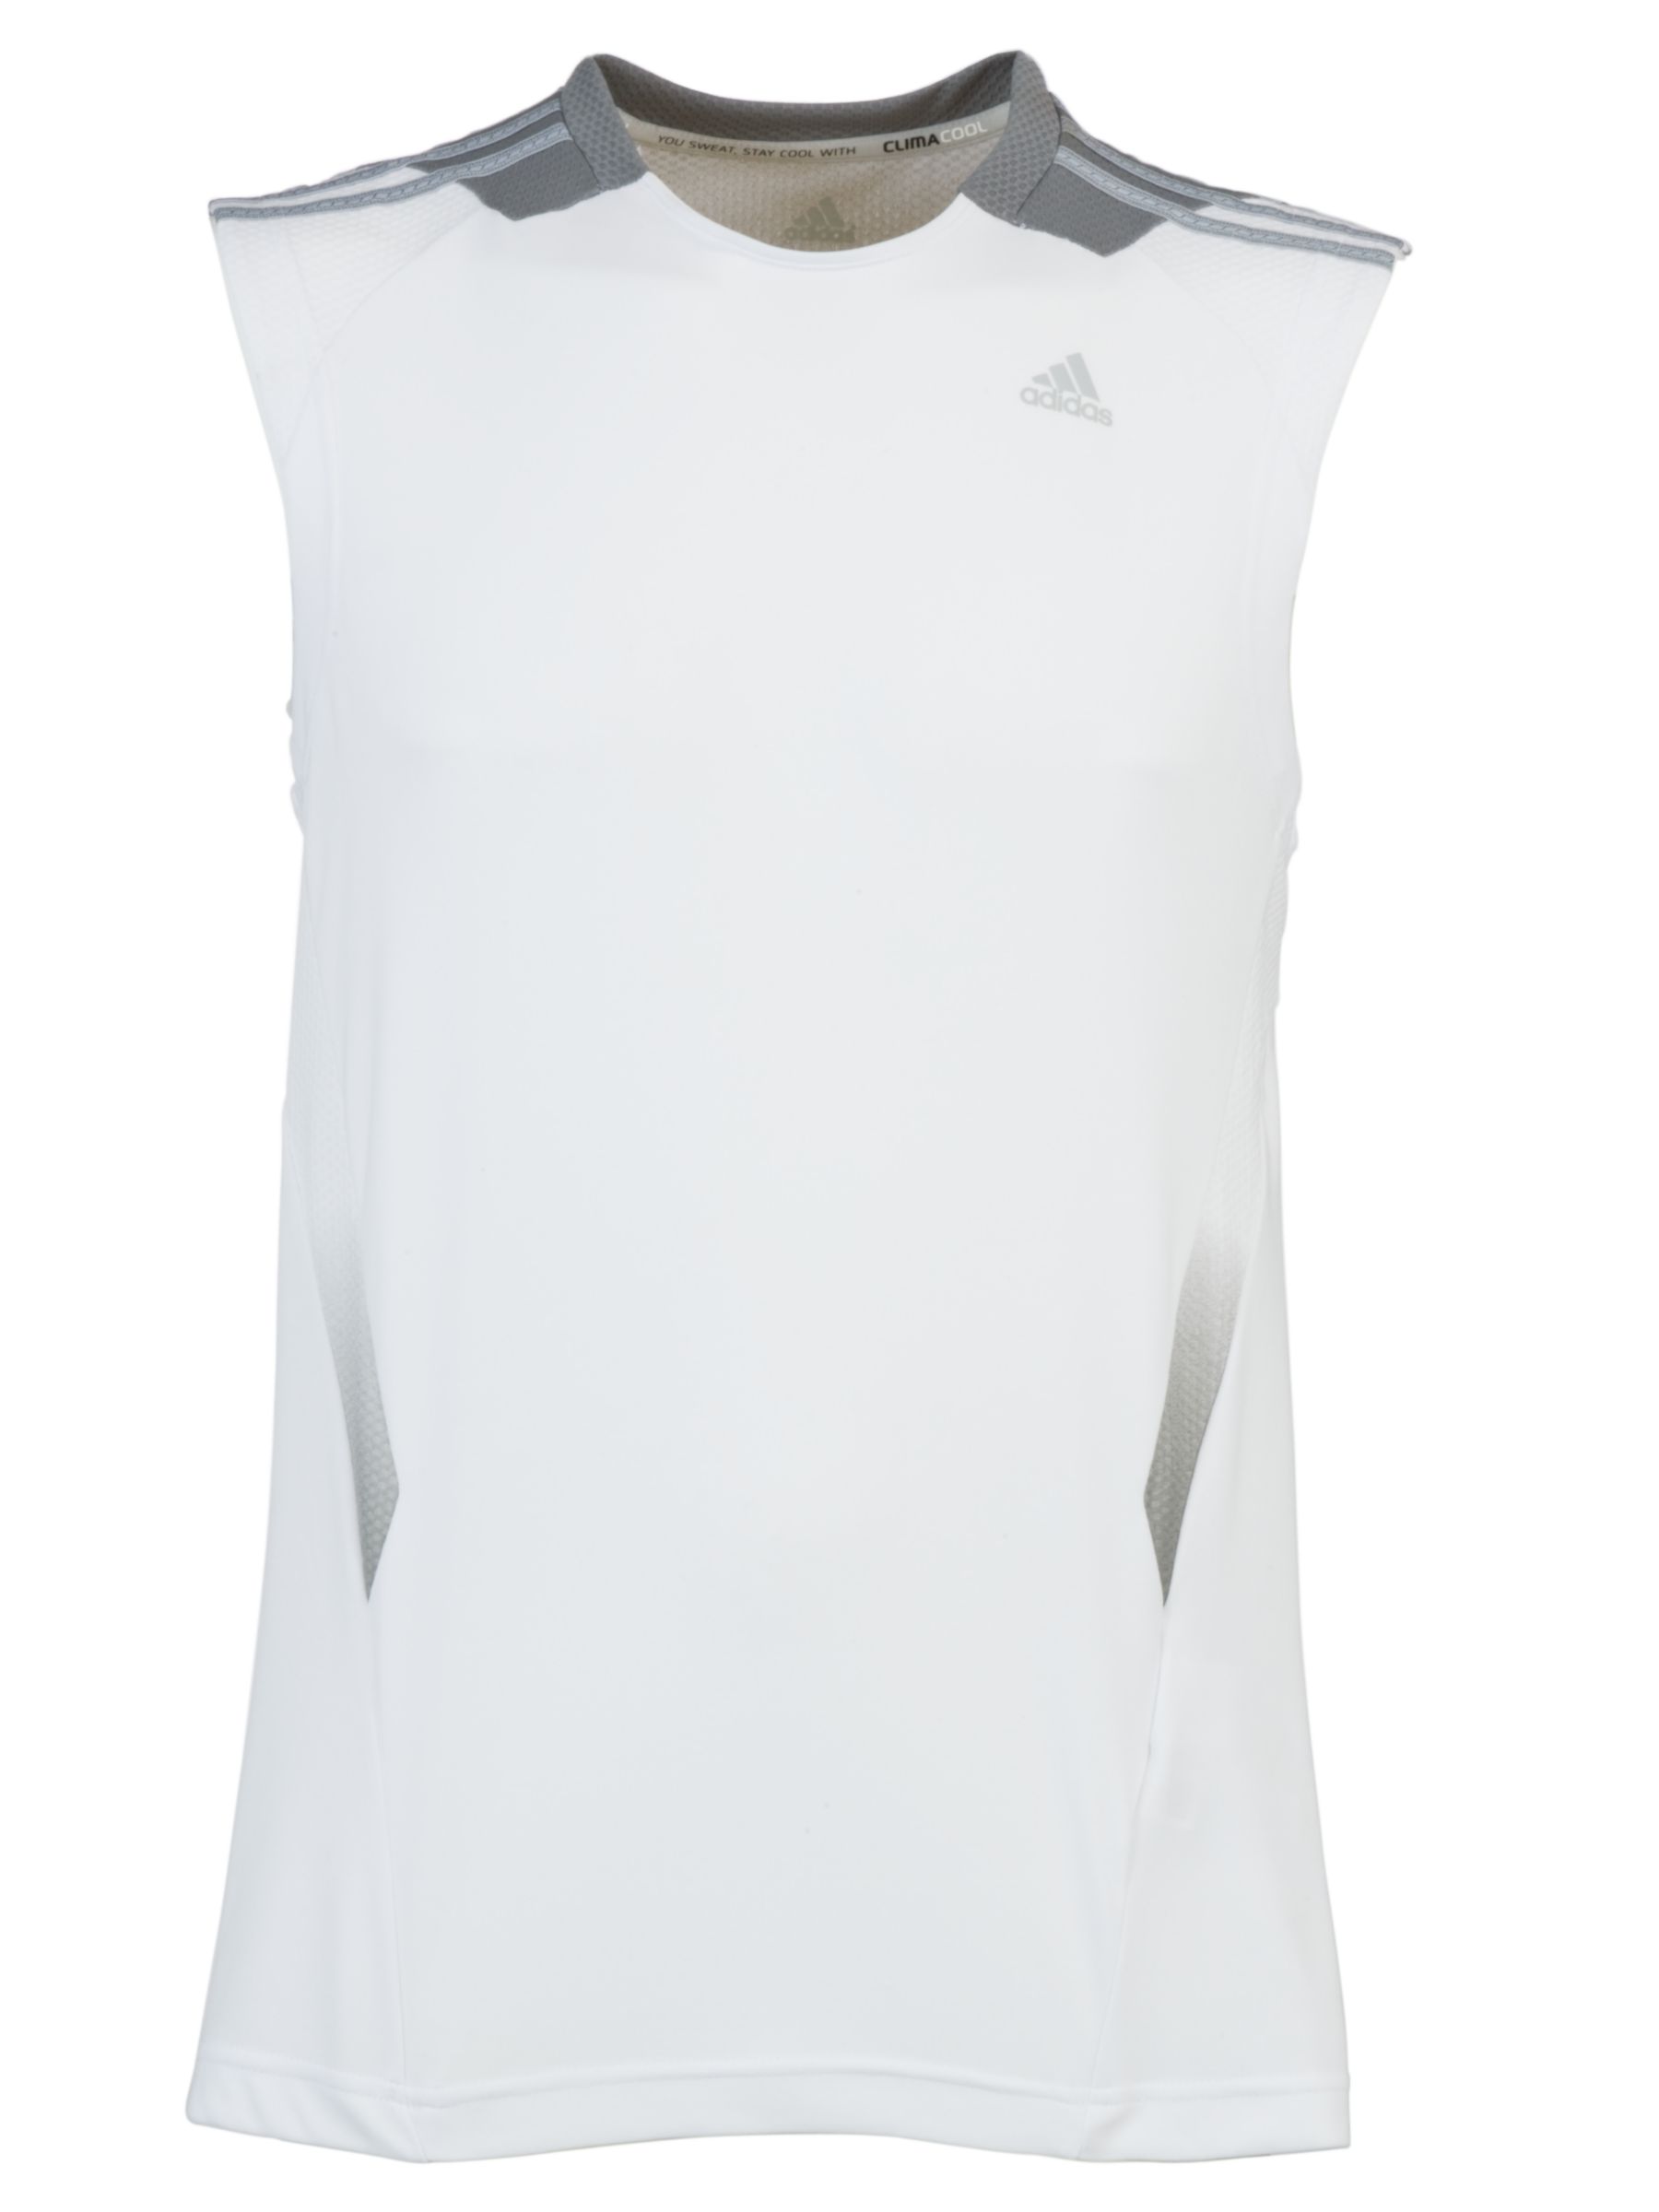 Clima365 Sleeveless T-Shirt, White/Shift